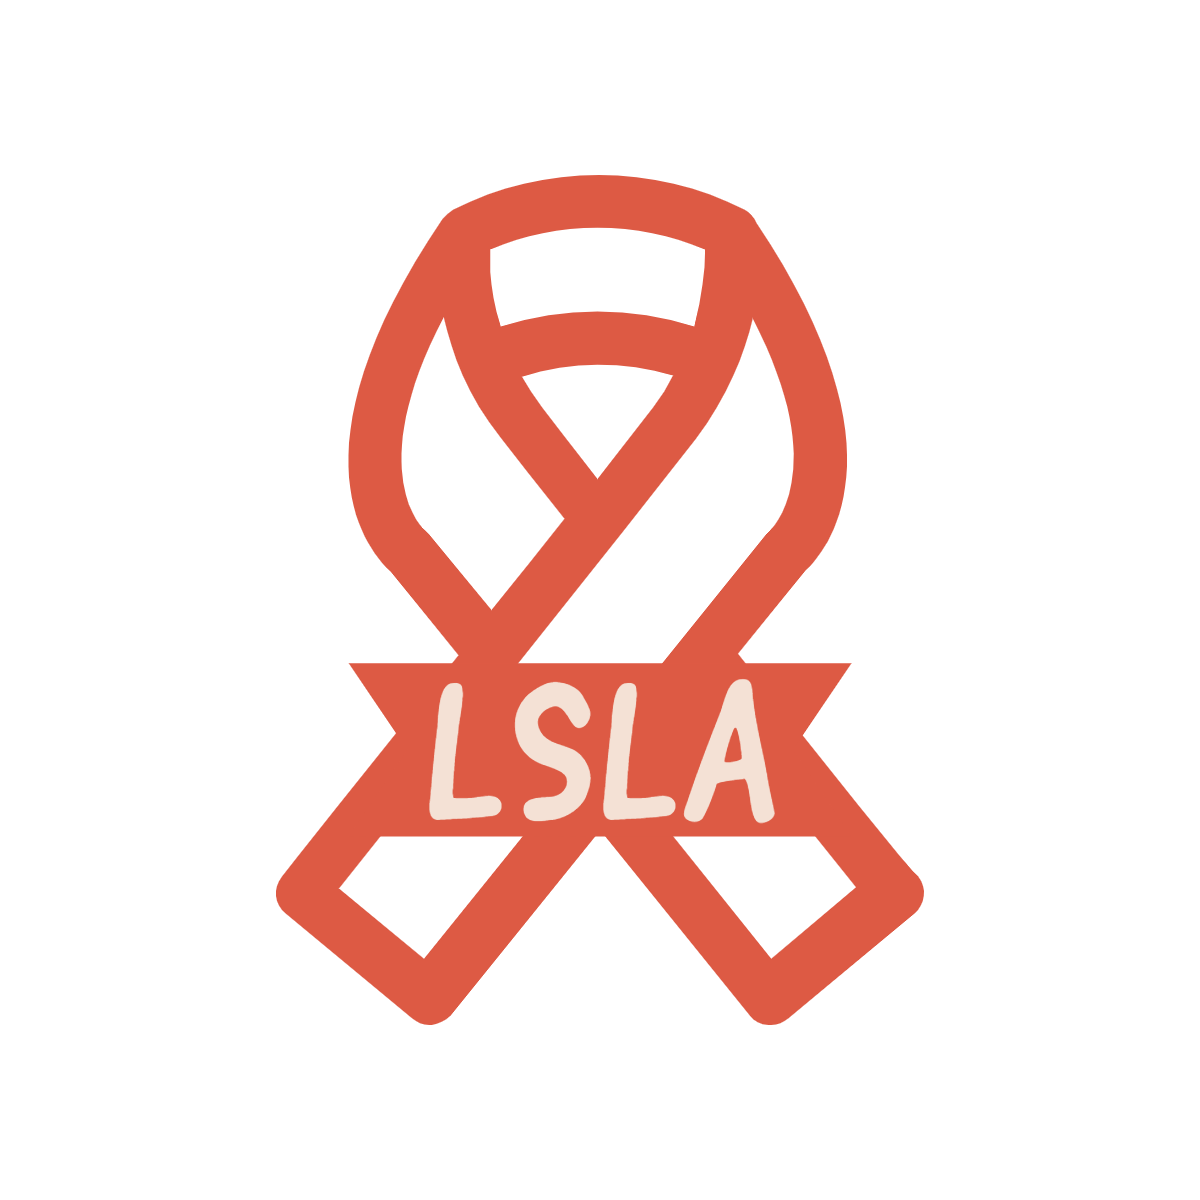 LSLA-logos_transparent.png